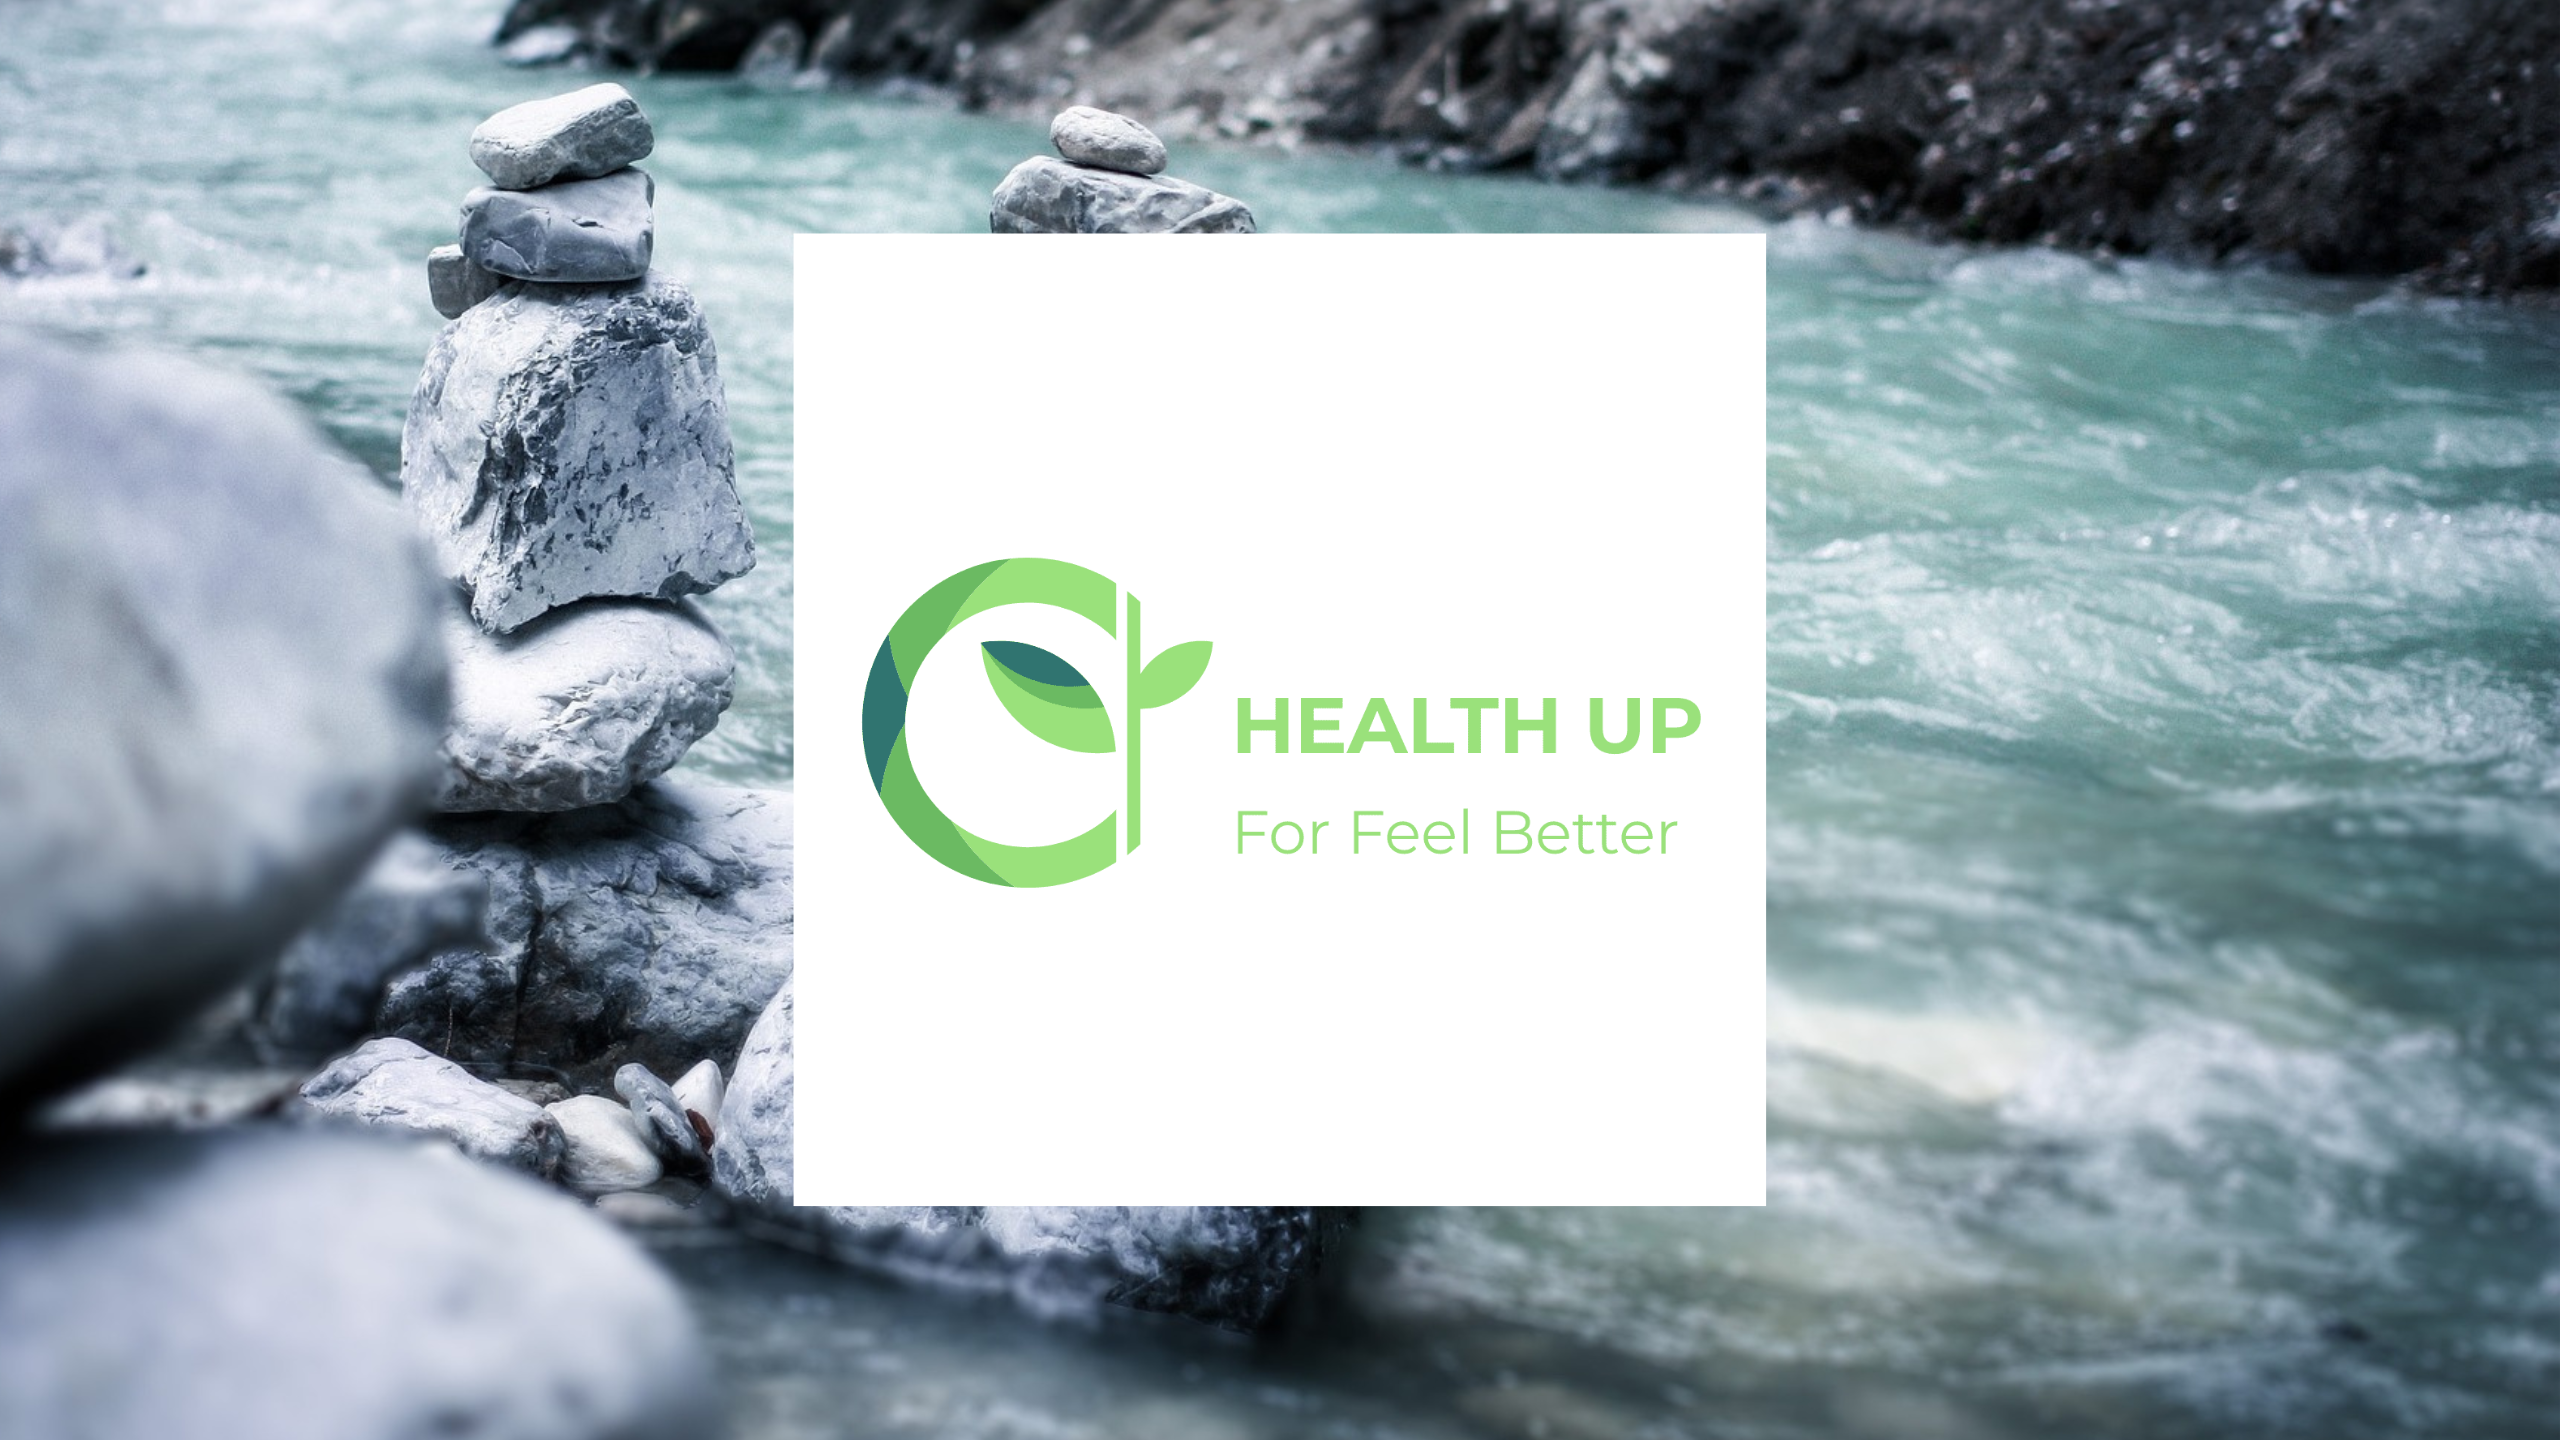 Bienvenue sur Health Up, votre nouveau site web dédié à la santé !